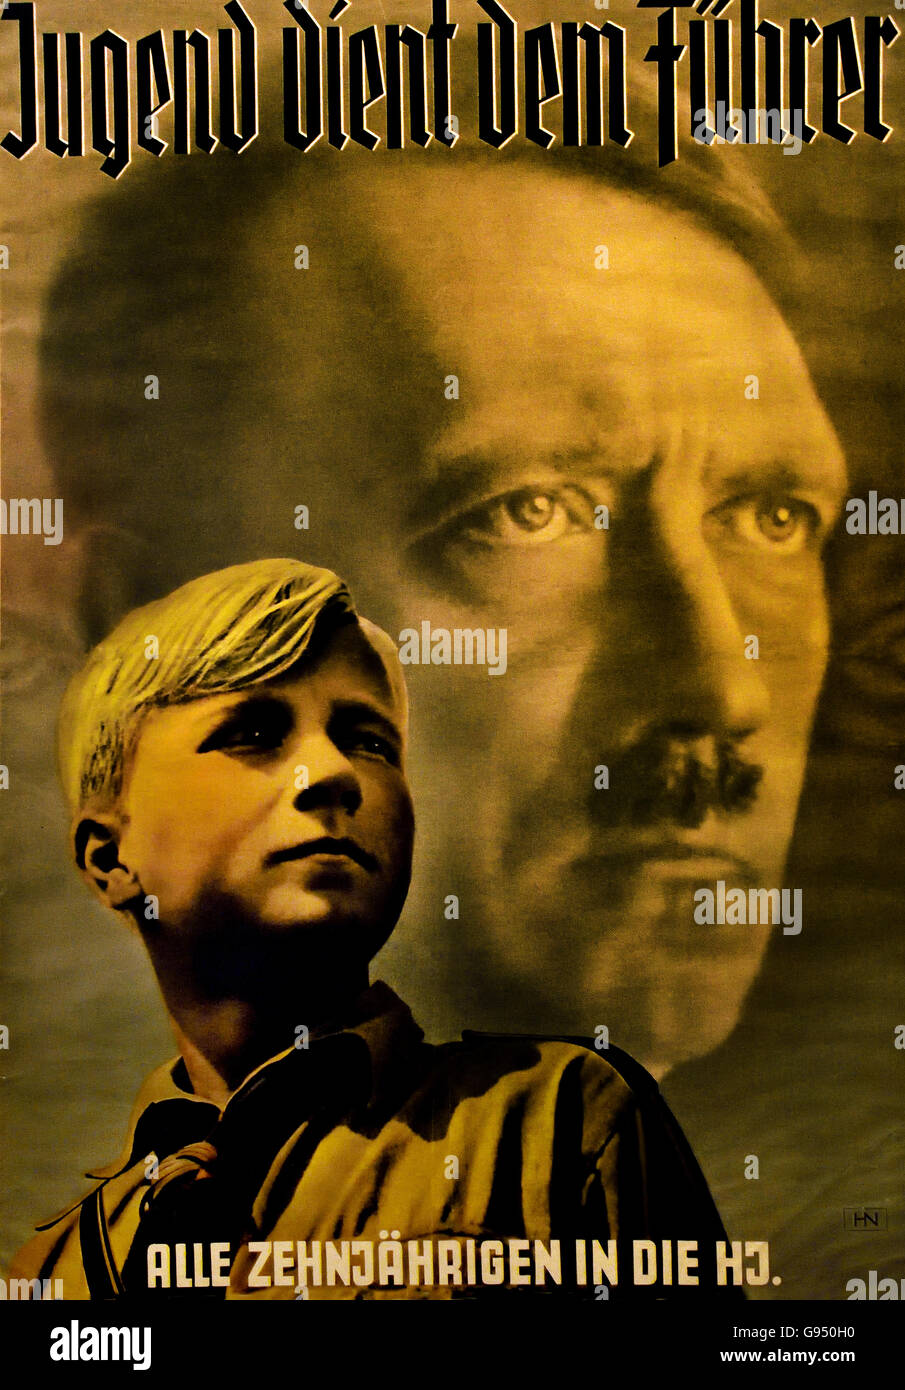 Adolf Hitler Werbe plakat für den Eintritt in die Hitler Jugend - poster promozionali per l'entrata nella Gioventù Hitleriana Berlino Germania nazista Foto Stock